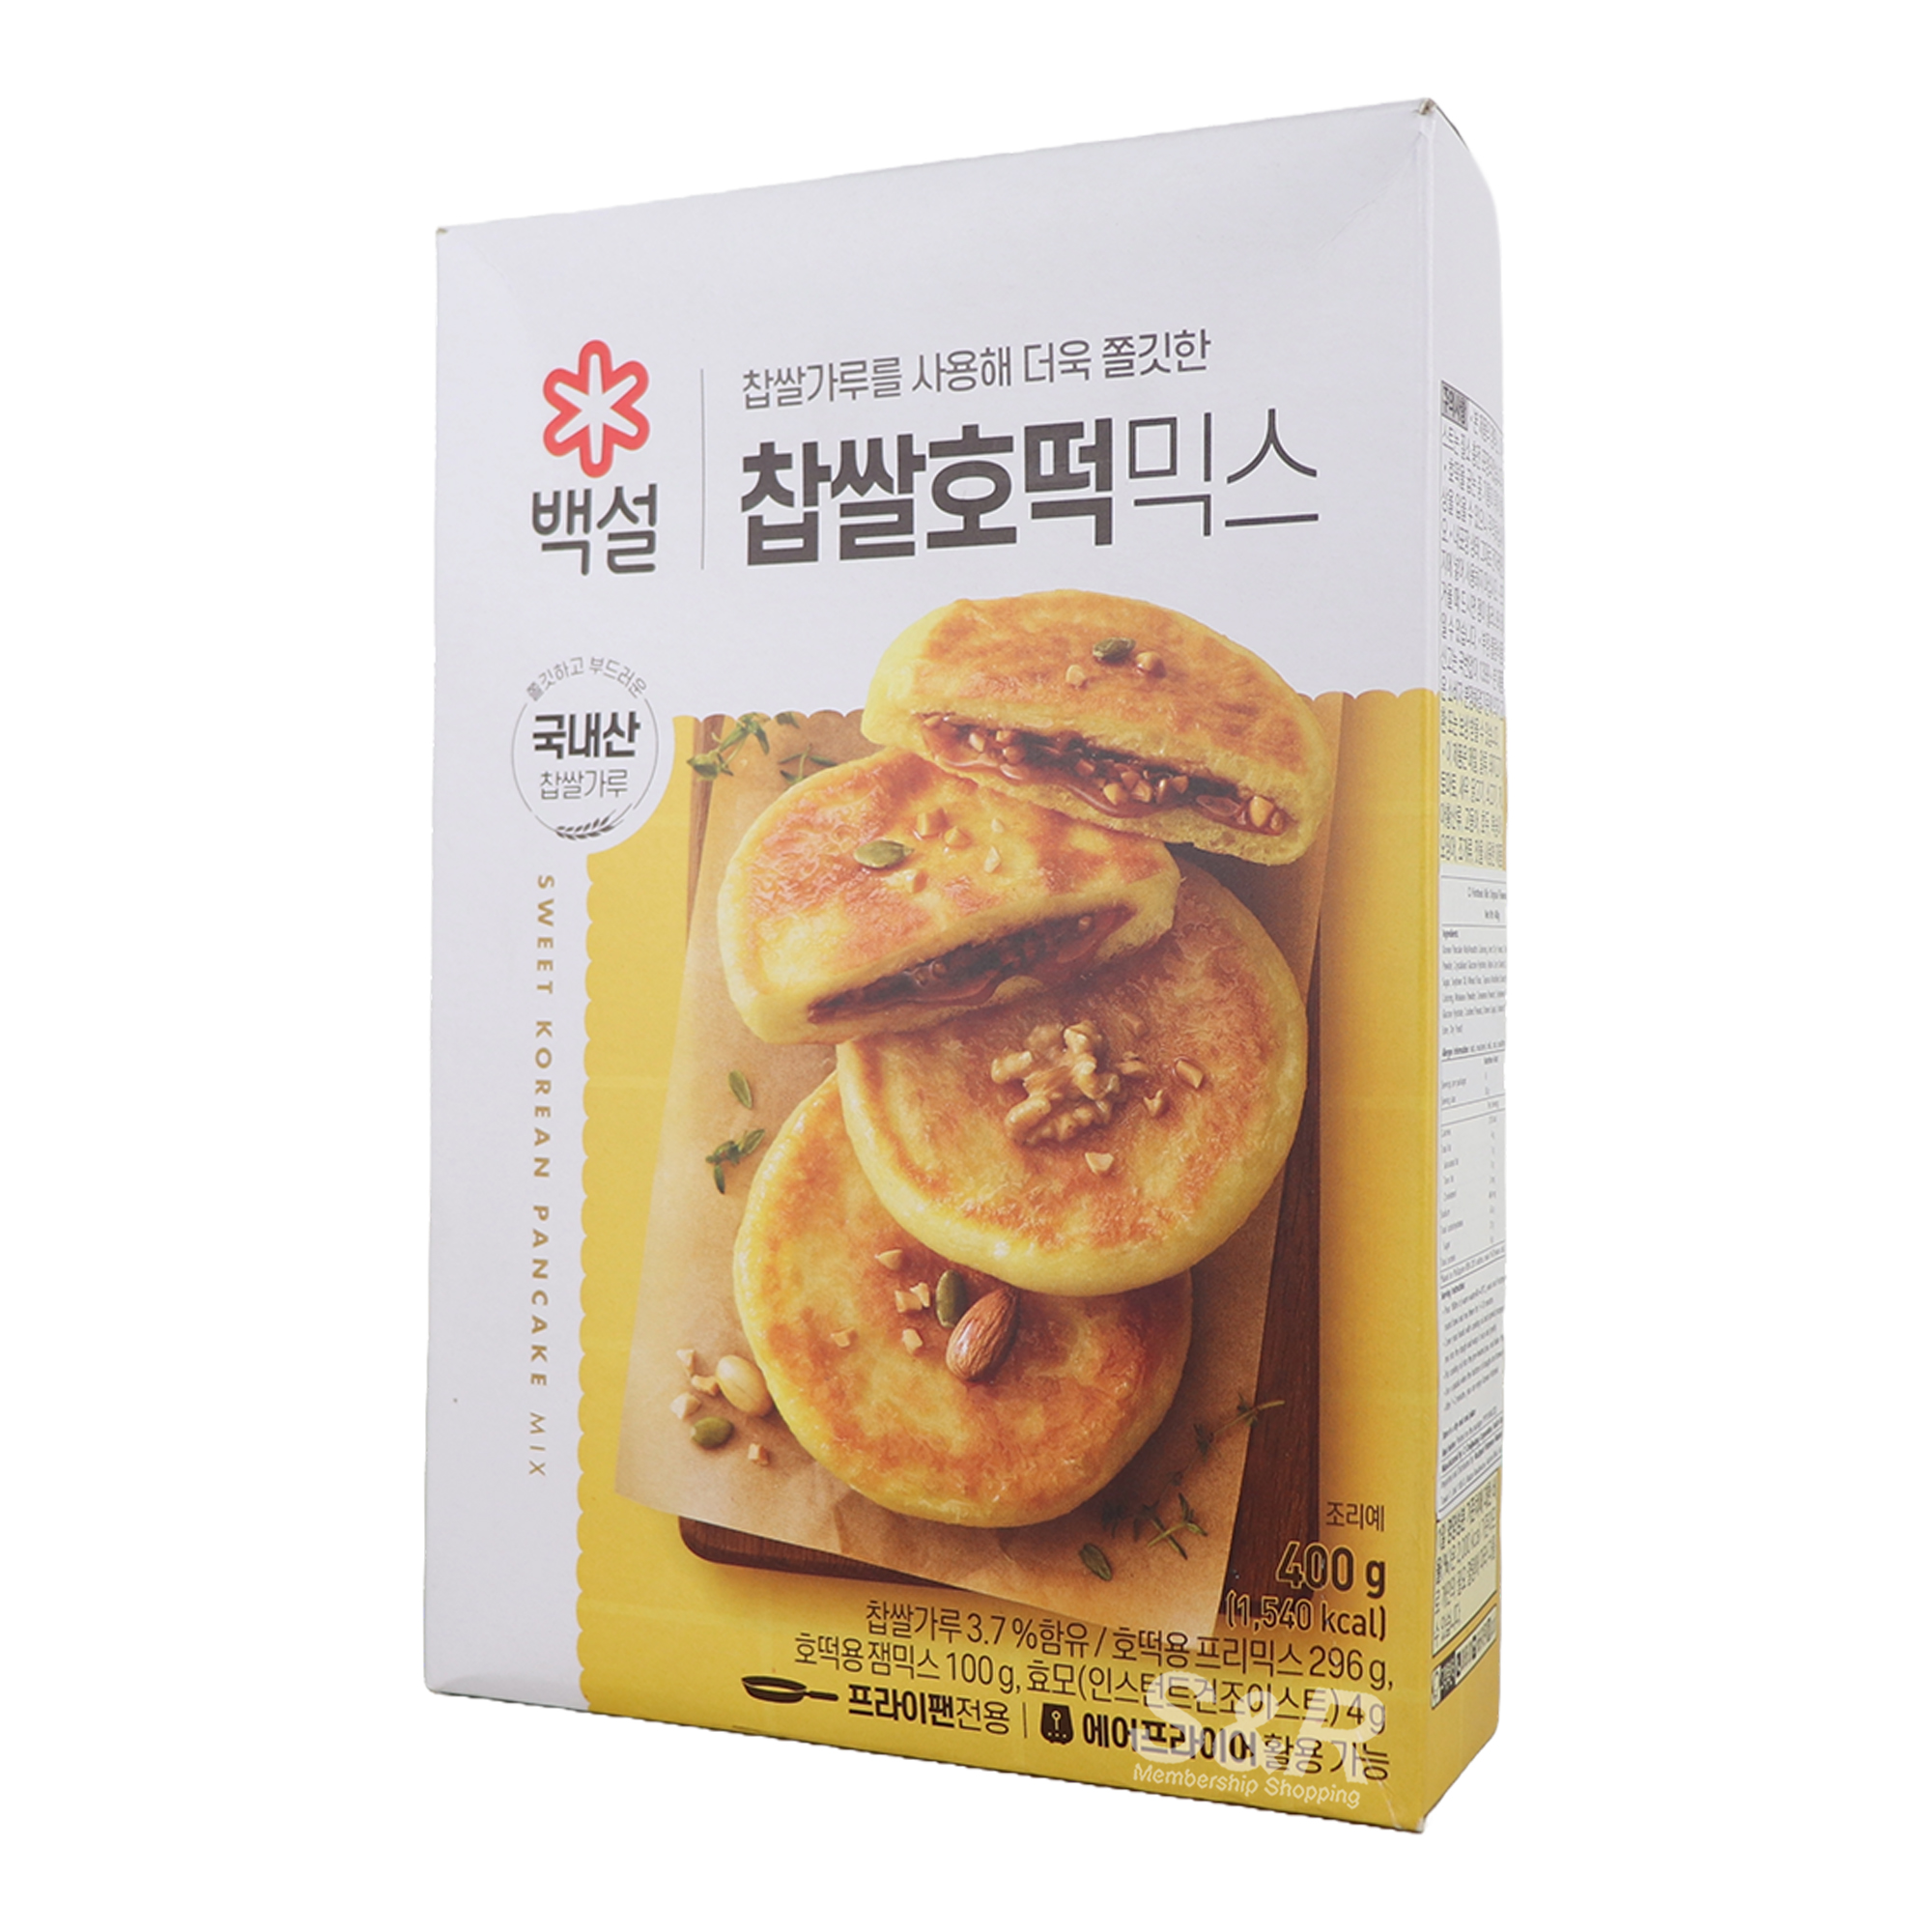 CJ Foods Beksul Hotteok Original Sweet Korean Pancake Mix 400g